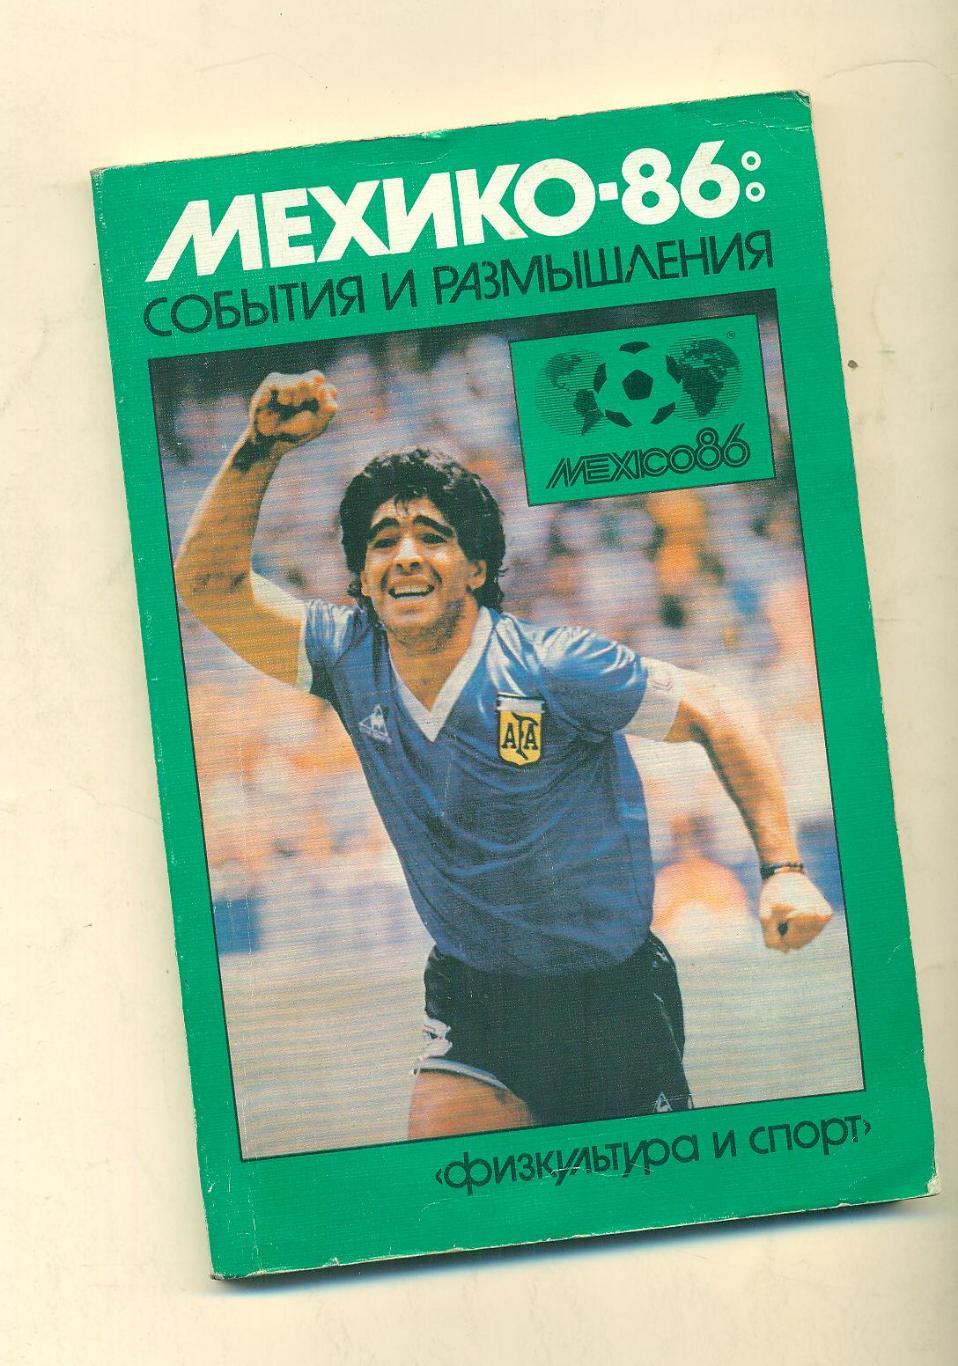 Мехико-1986:события и размышления.